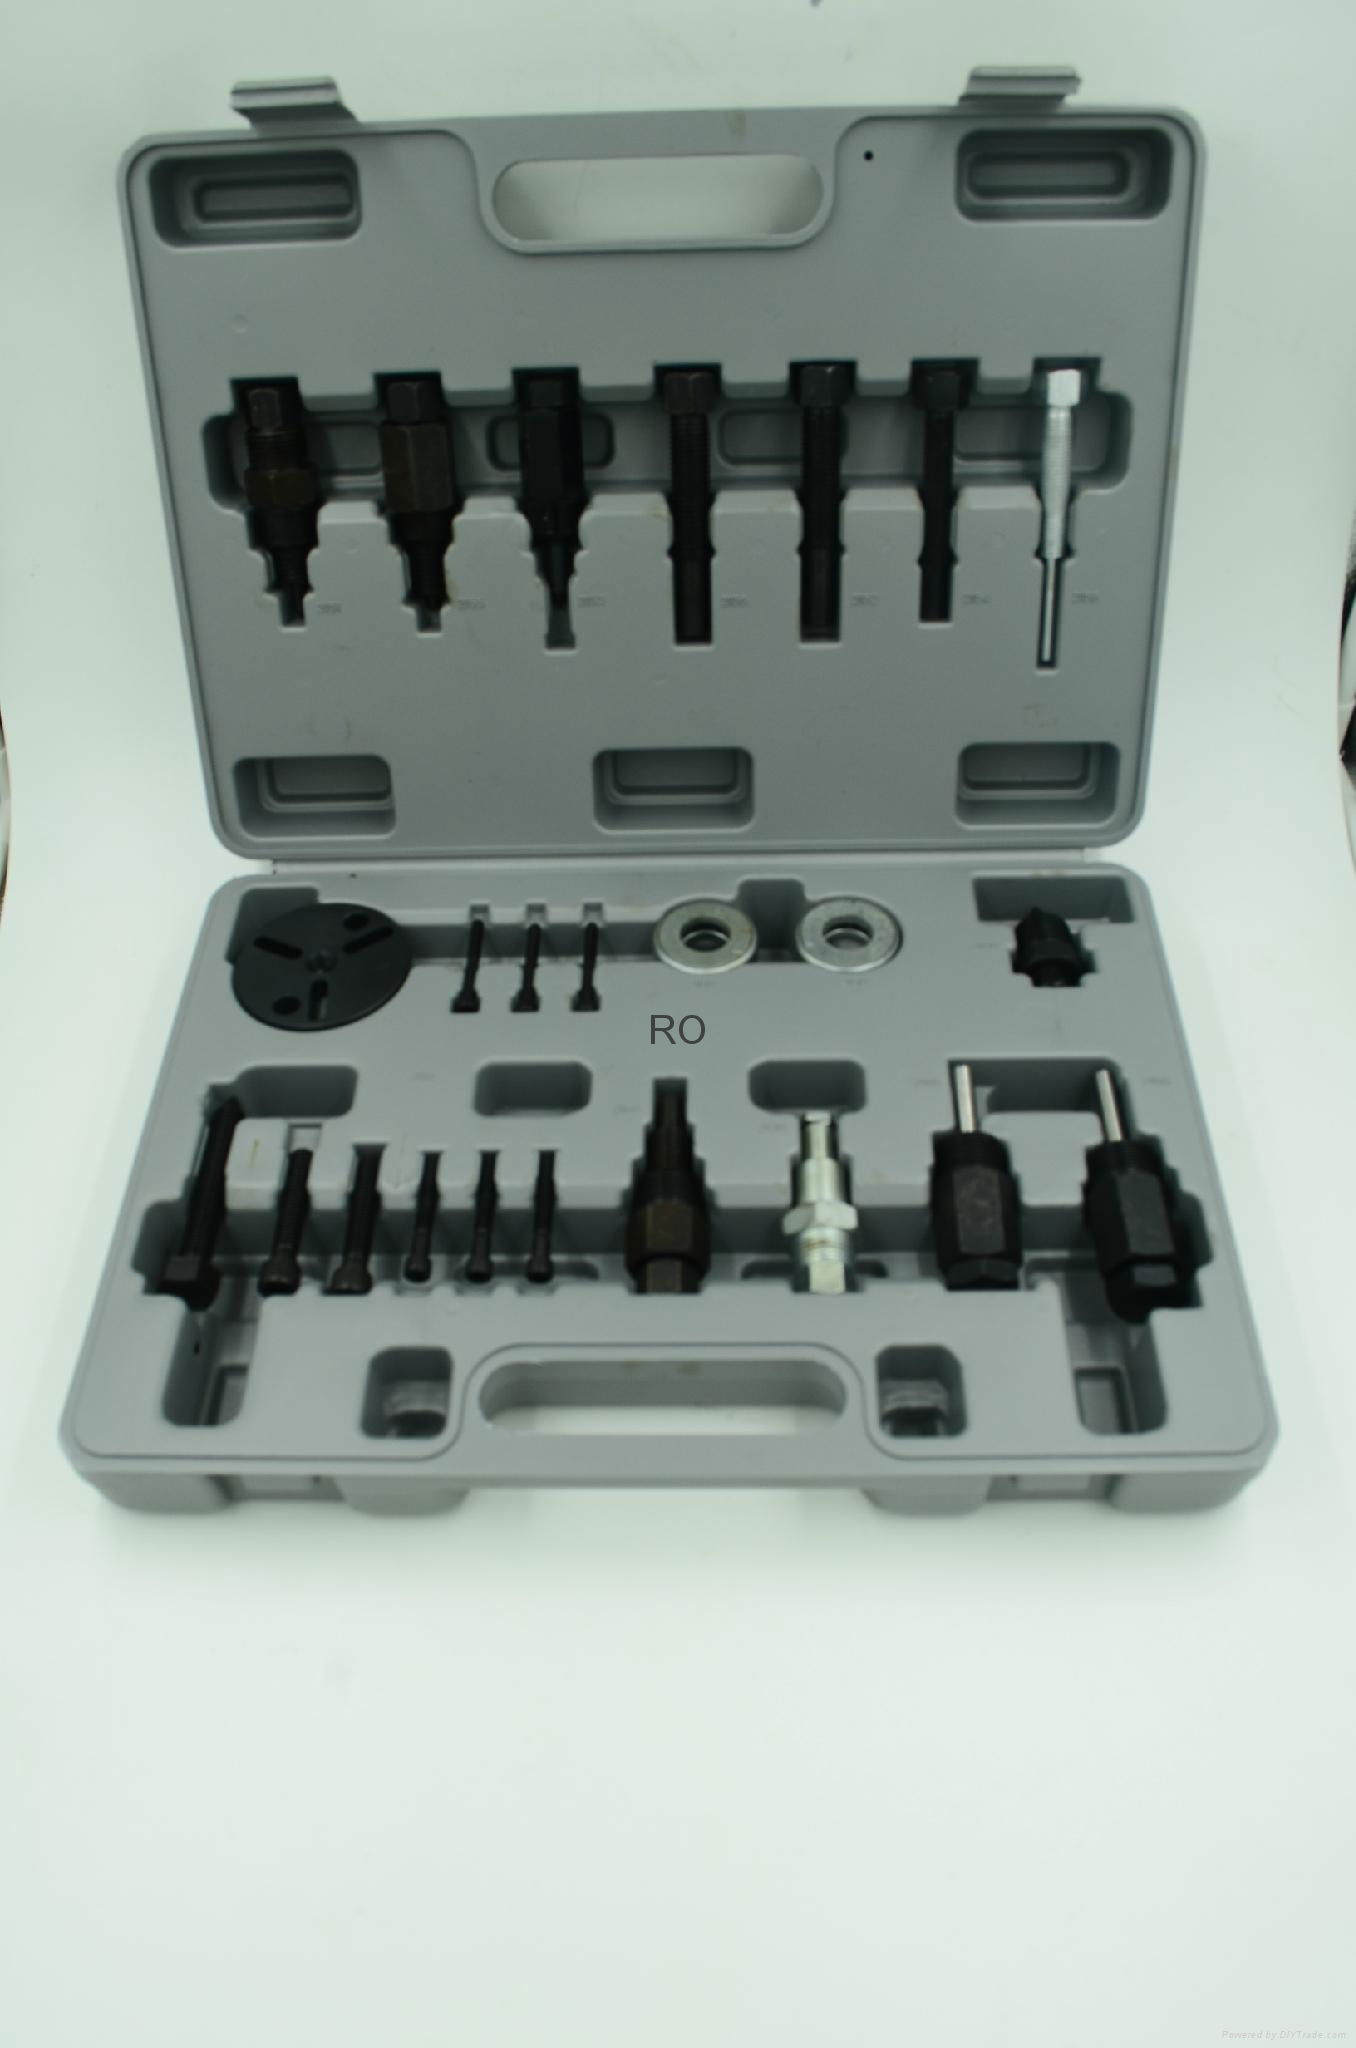 automotive a c compressor repair kits